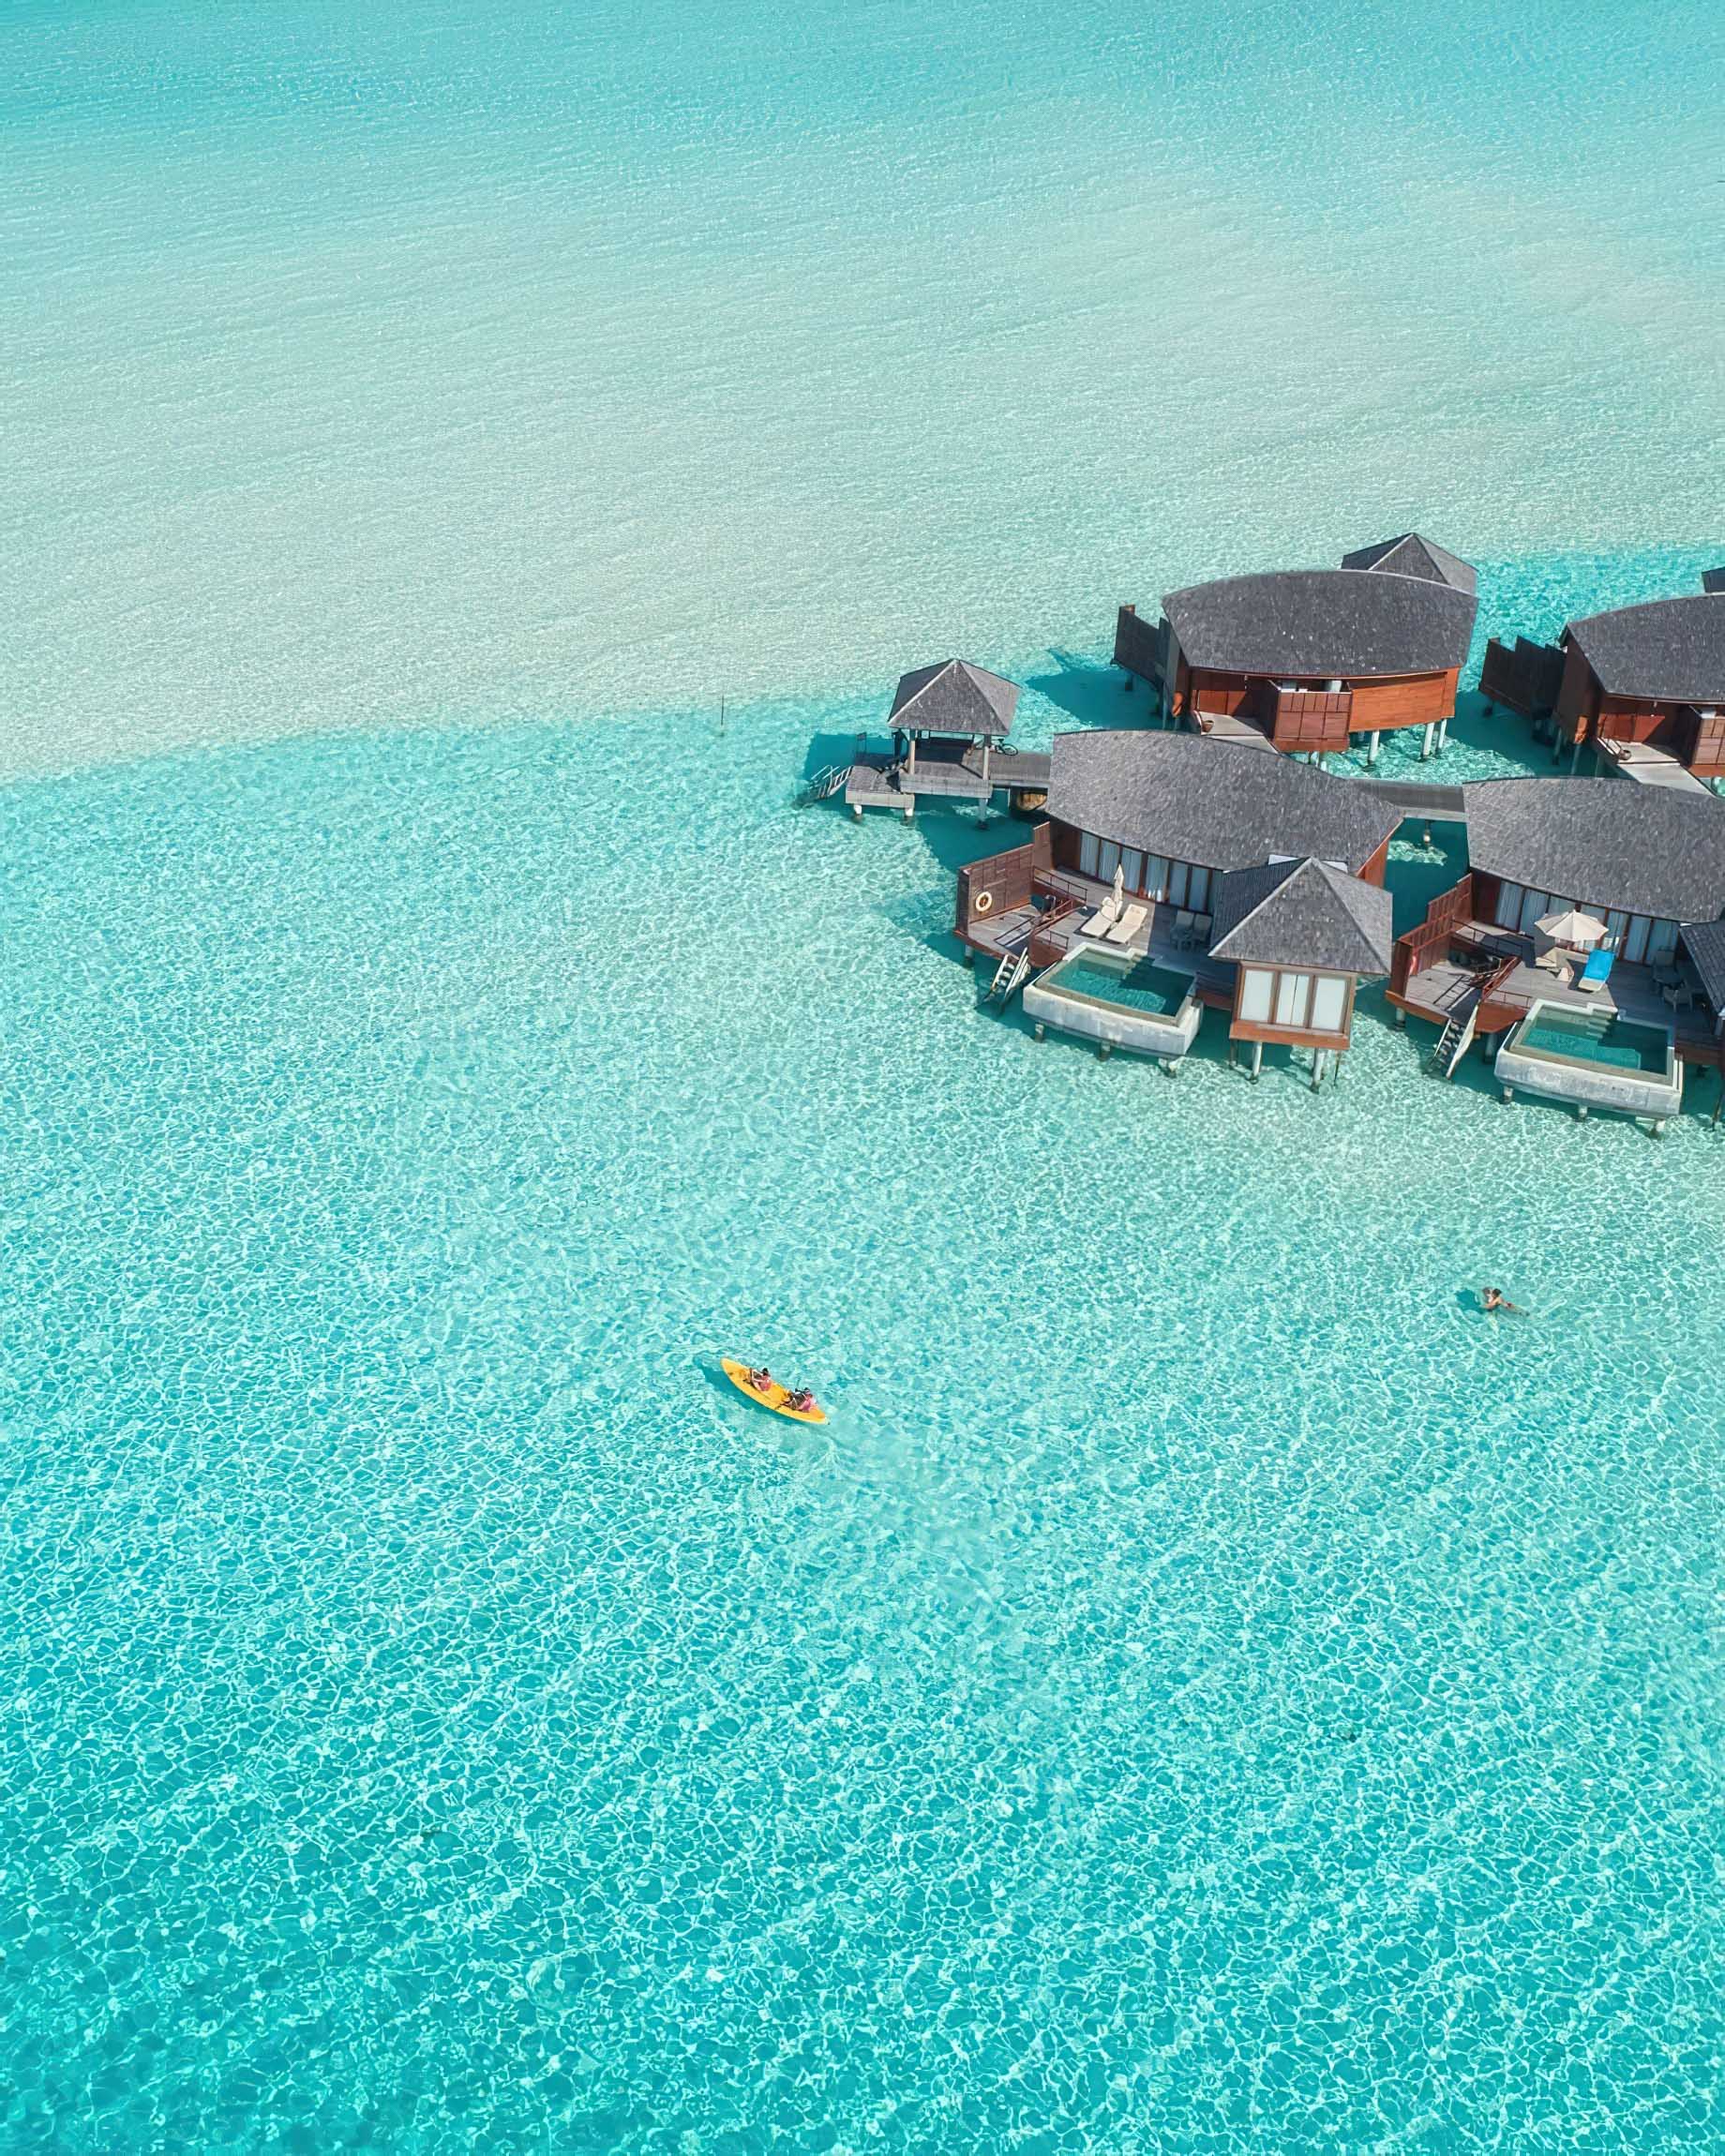 Anantara Thigu Maldives Resort – South Male Atoll, Maldives – Water Sports